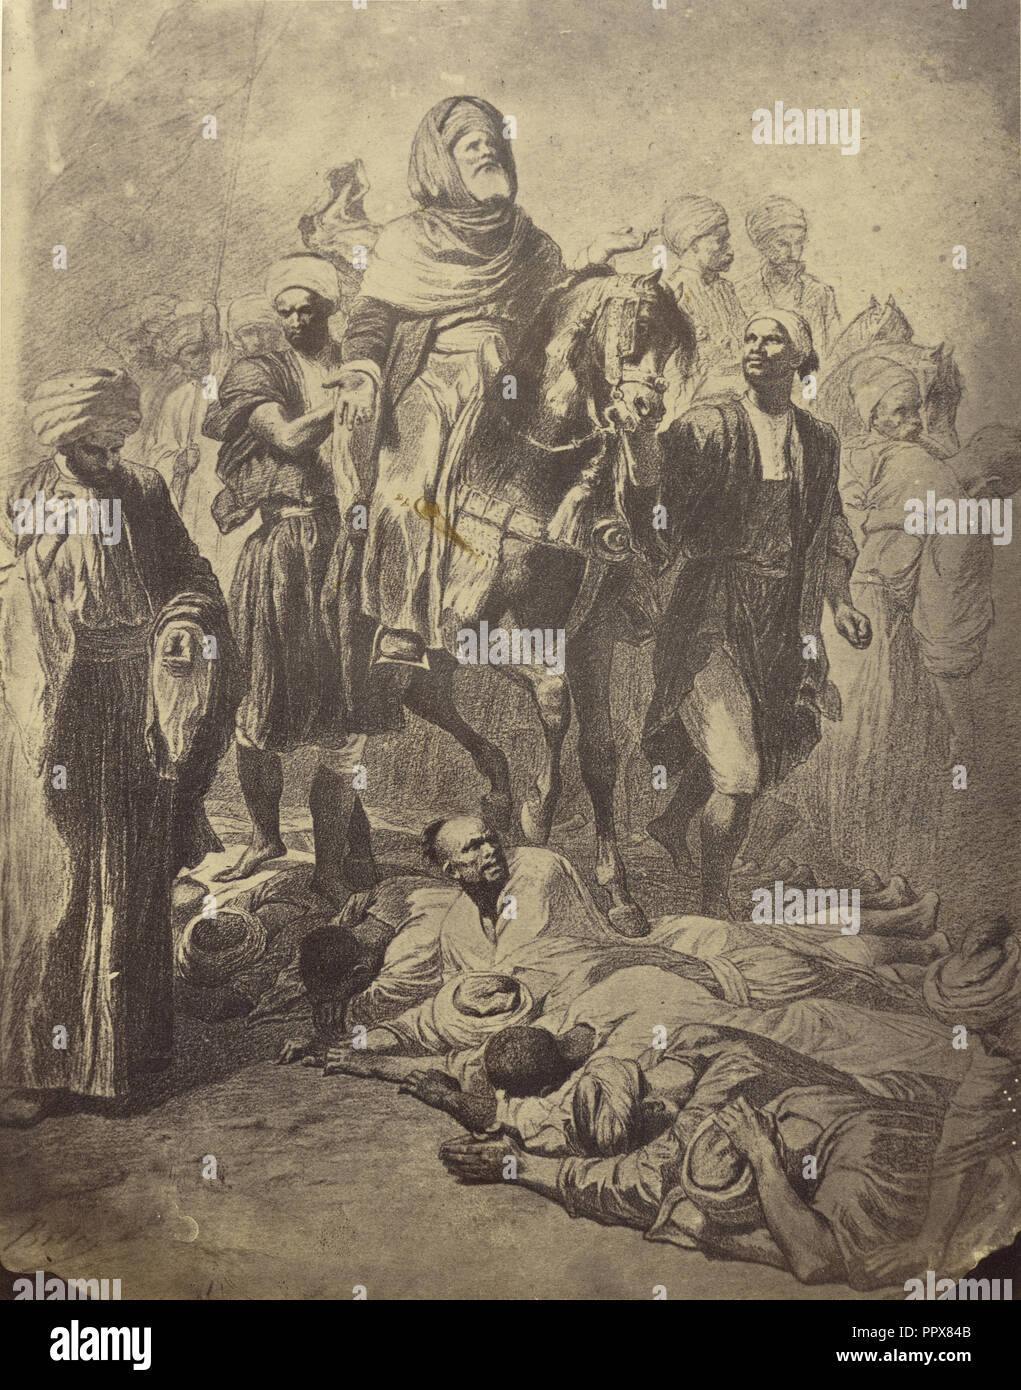 Depart du Scherif es lam pour la Mecque; William J. Stillman, American, 1828 - 1901, 1860s; Albumen silver print Stock Photo